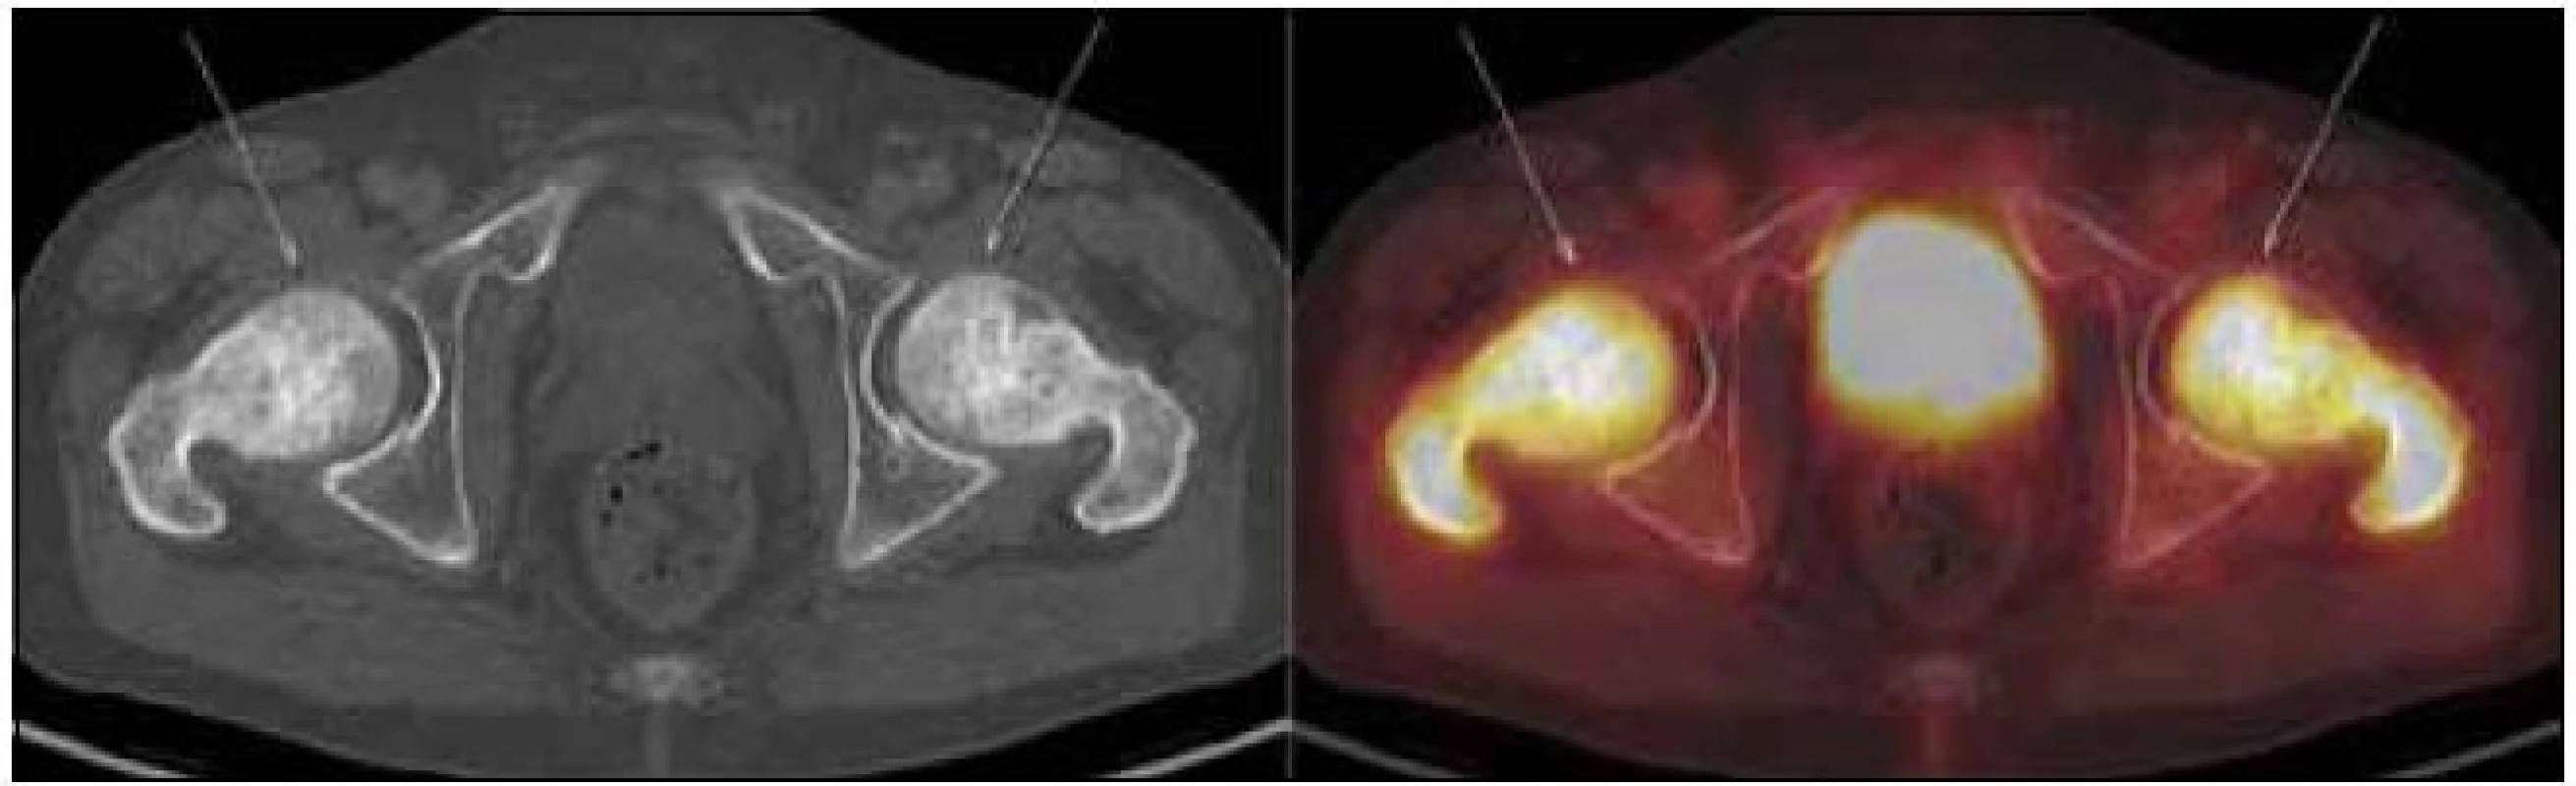 PET-CT zobrazení kyčle a femurů. Oba femury mají nepravidelnou, převážně sklerotickou strukturu spongiózy s osteolytickými okrsky, v těchto místech i jasný hypermetabolizmus glukózy (označeno šipkami). Aktivita v močovém měchýři fyziologická při vylučování radiofarmaka.